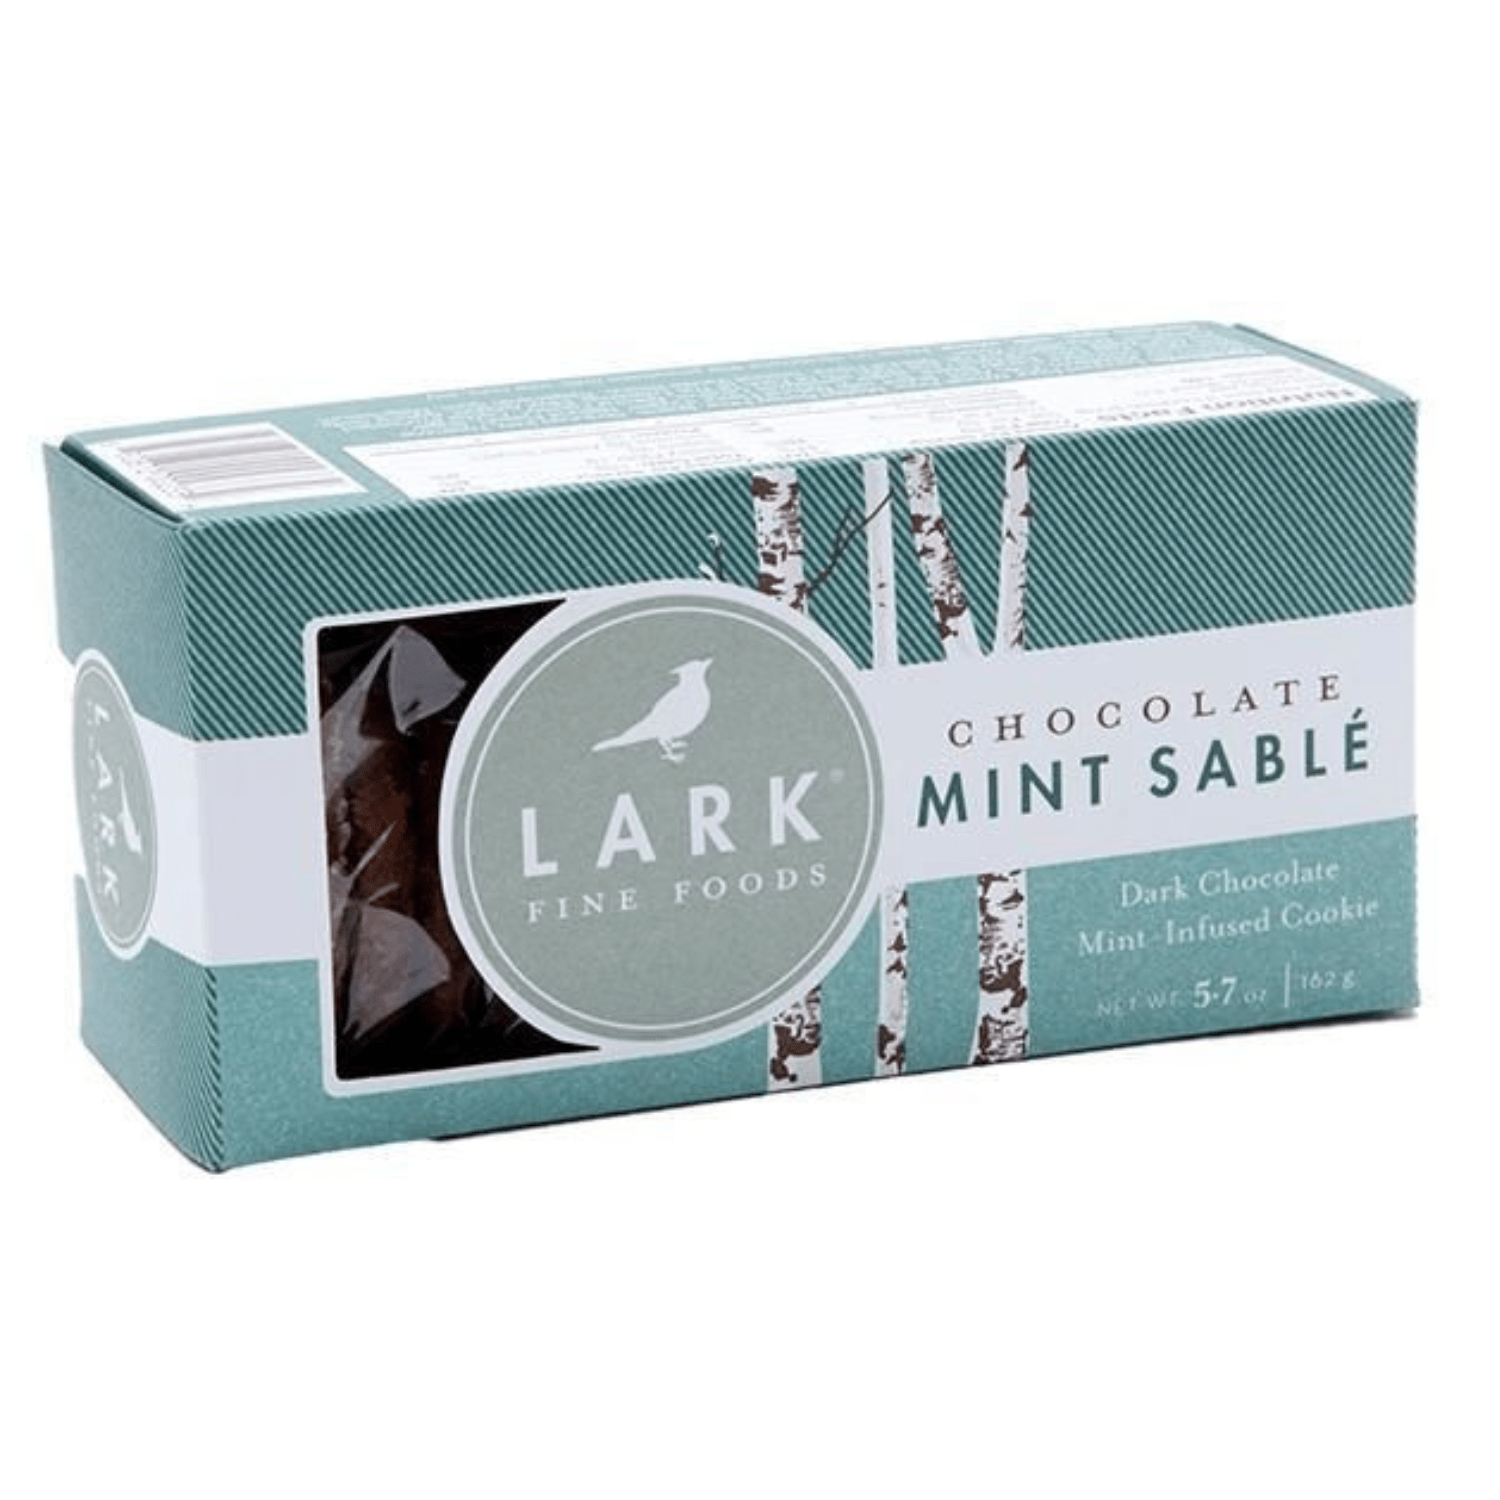 Chocolate Mint Sable - Unboxme